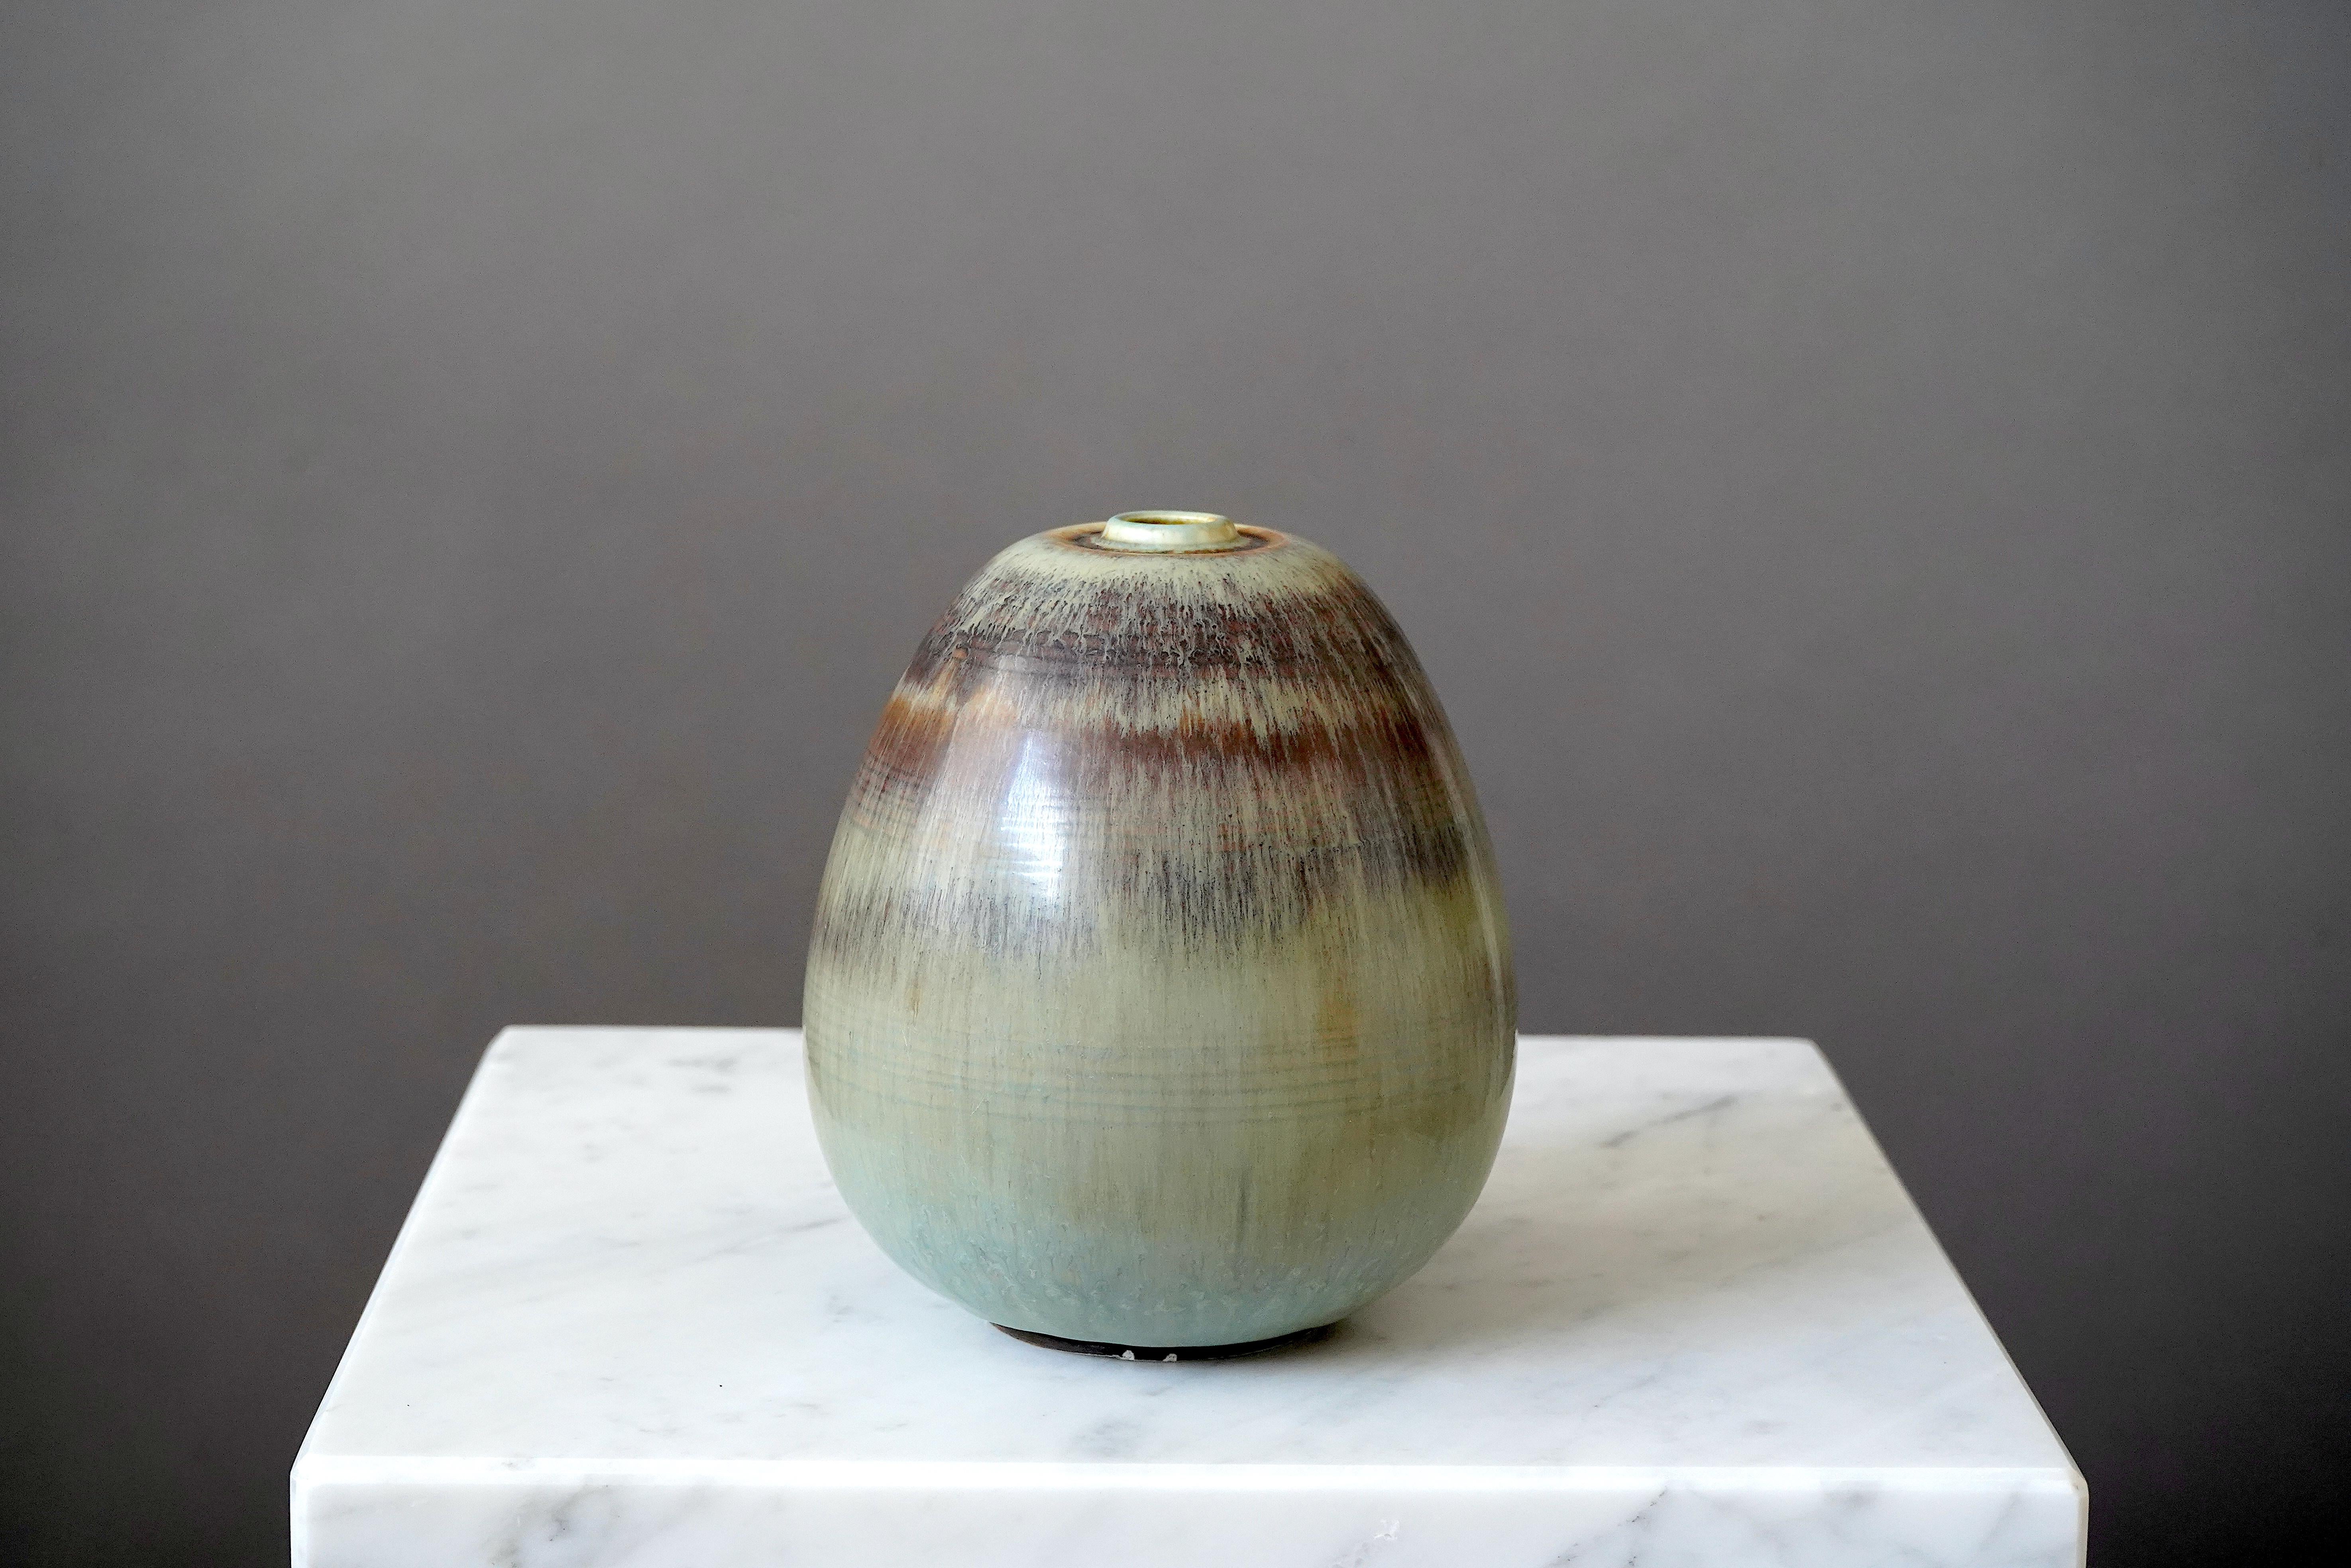 Magnifique et rare vase en grès conçu par Gertrud Lönegren.
Cette pièce de studio a été créée à Rorstrand en Suède entre 1936 et 1941.

Glaçure exquise. Impression 